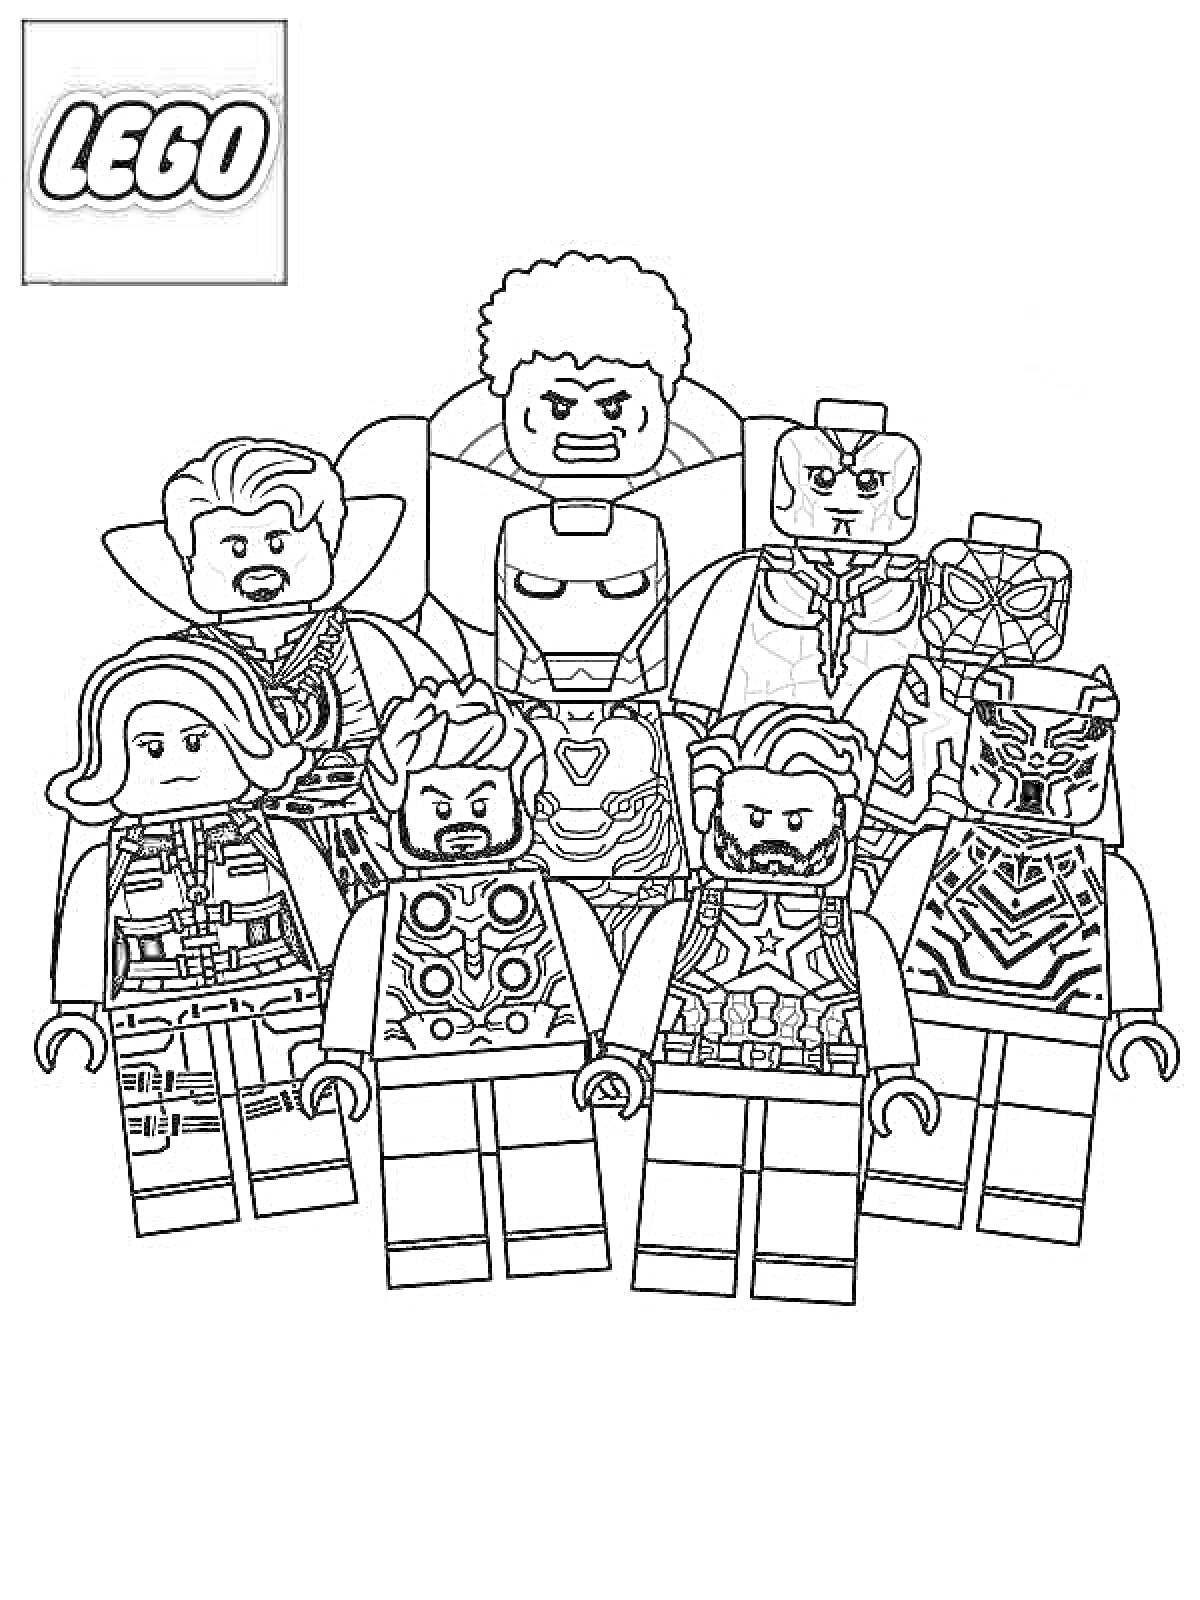 Лего мстители - Железный человек, Капитан Америка, Чёрная Пантера, Чёрная Вдова, Тор, Вижн, Доктор Стрэндж и Халк